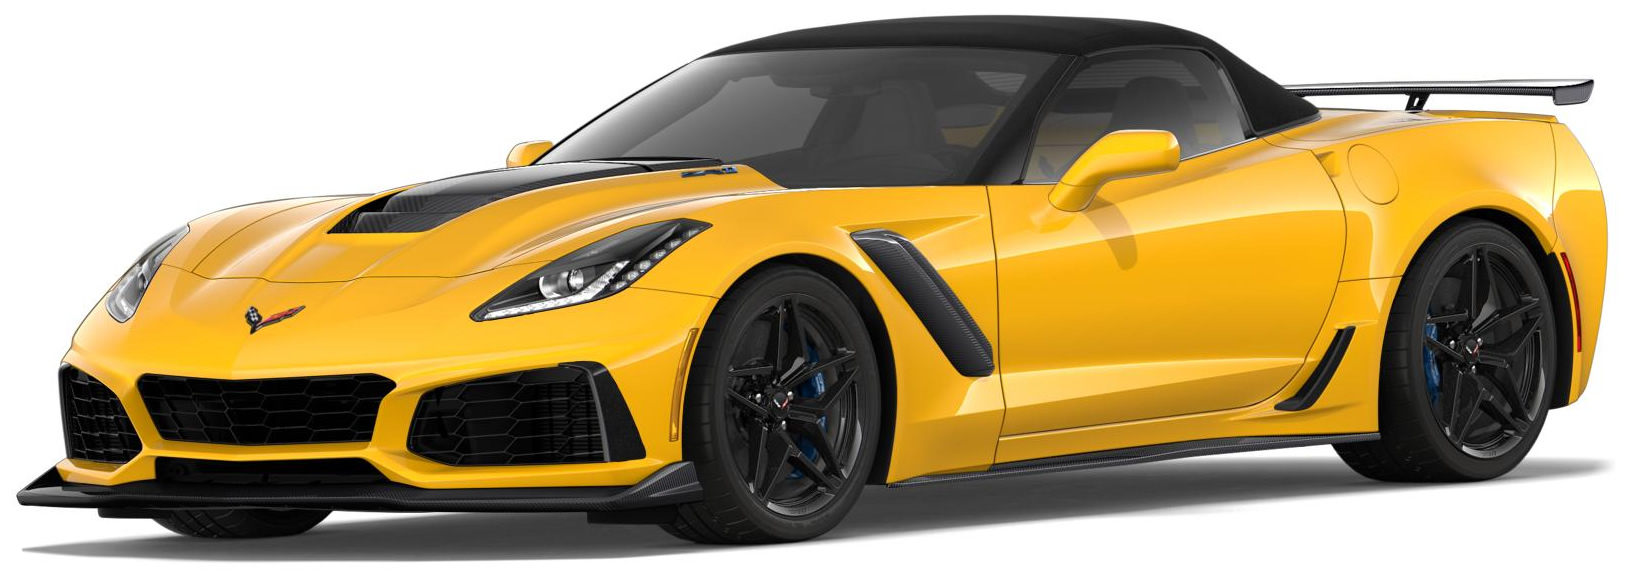 2019 Corvette ZR1 Convertible in Corvette Racing Yellow Tintcoat